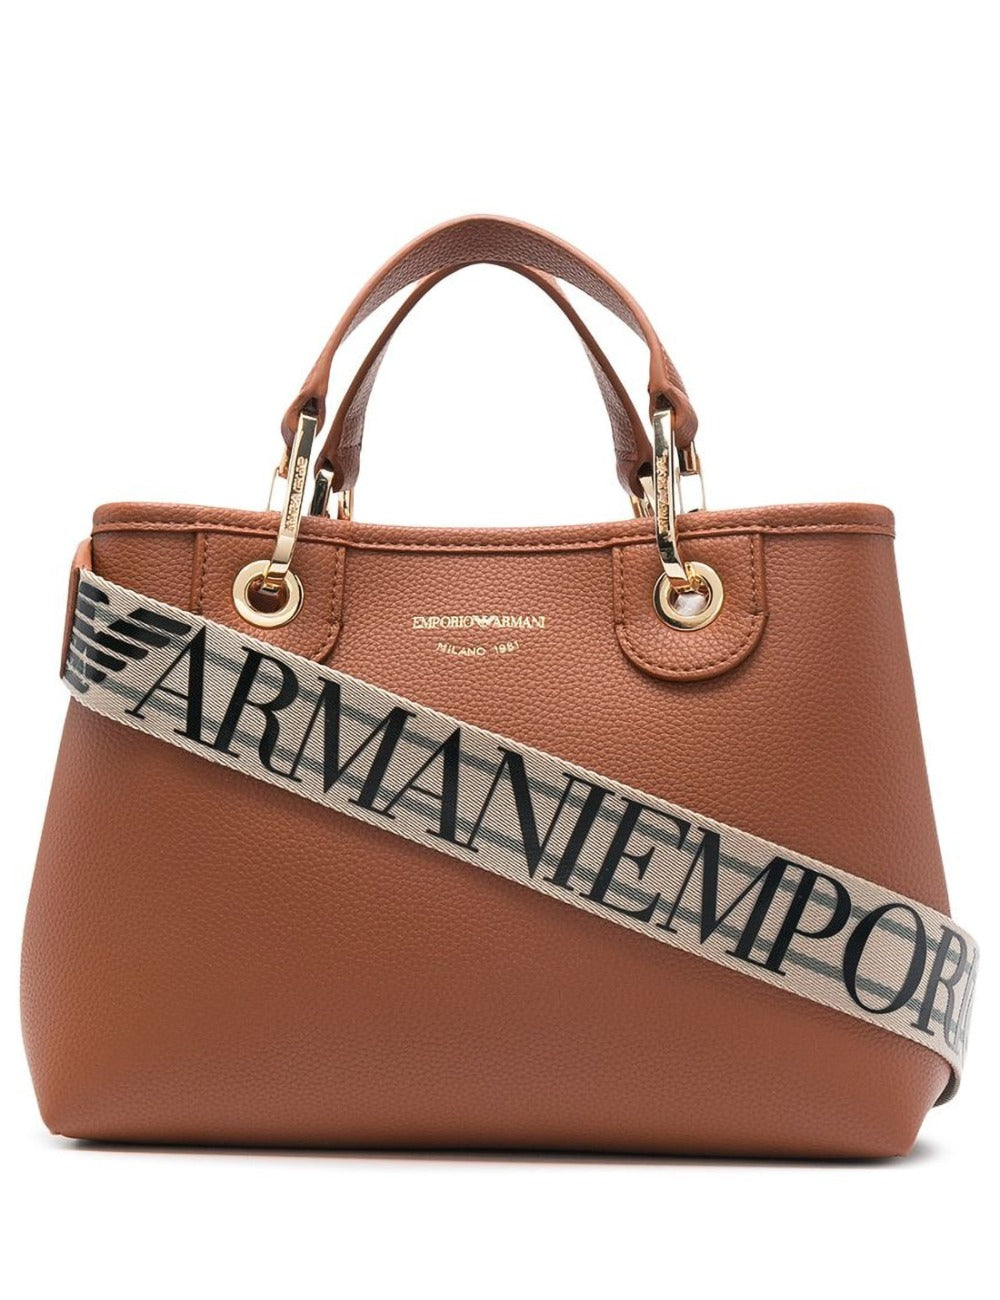 EMPORIO ARMANI WOMEN'S SHOPPING BAG